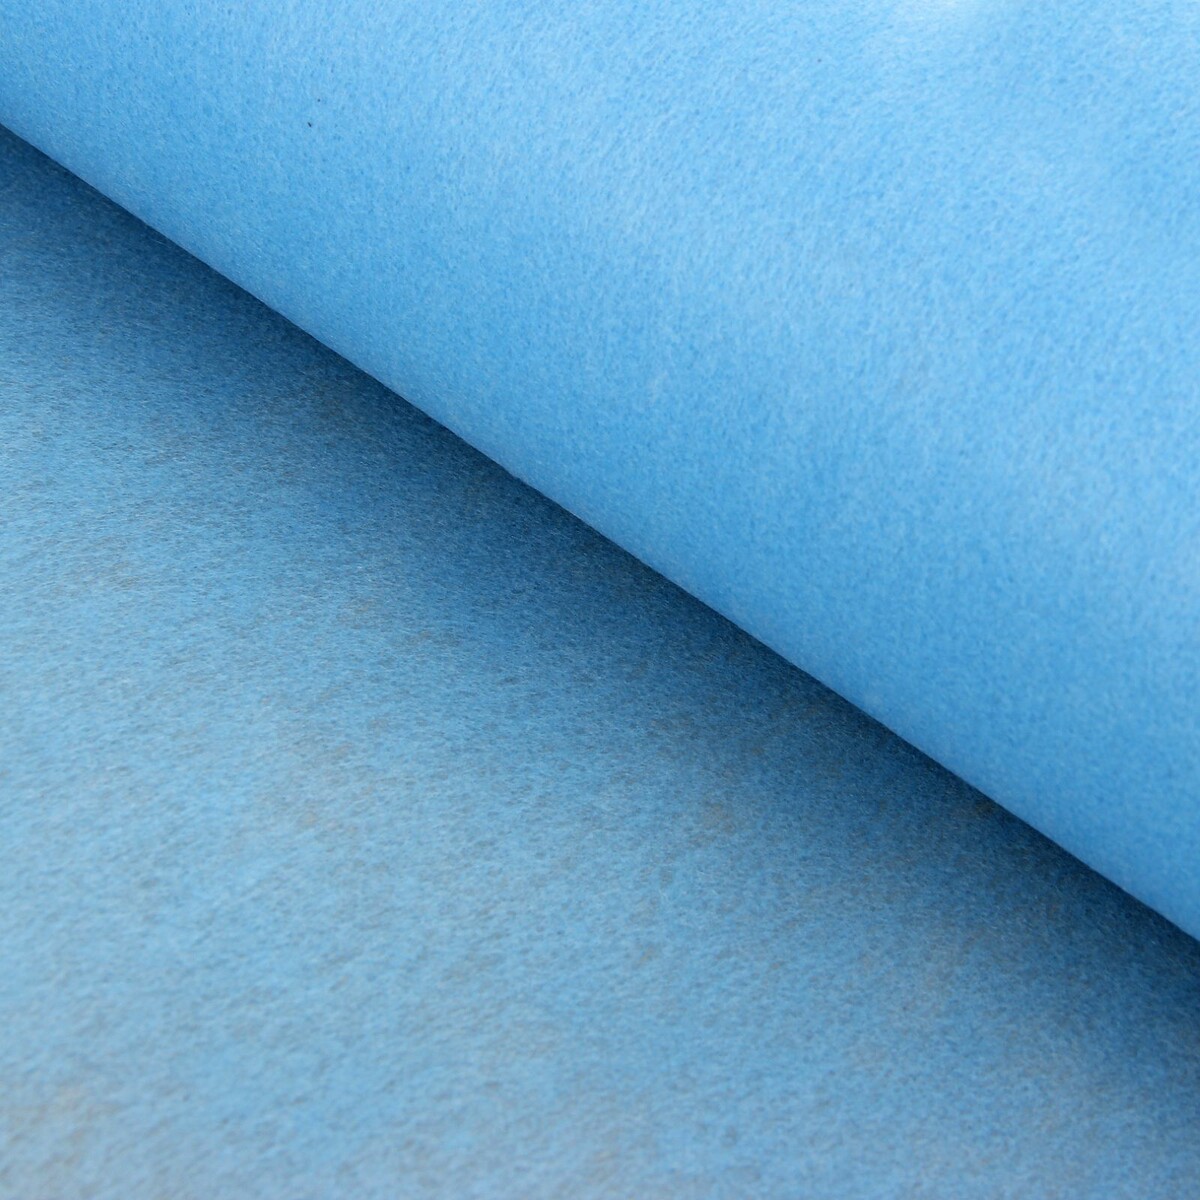 Фетр для упаковок и поделок, однотонный, голубой, двусторонний, рулон 1шт., 50 см x 15 м фетр голубой a4 10 листов астра креатив